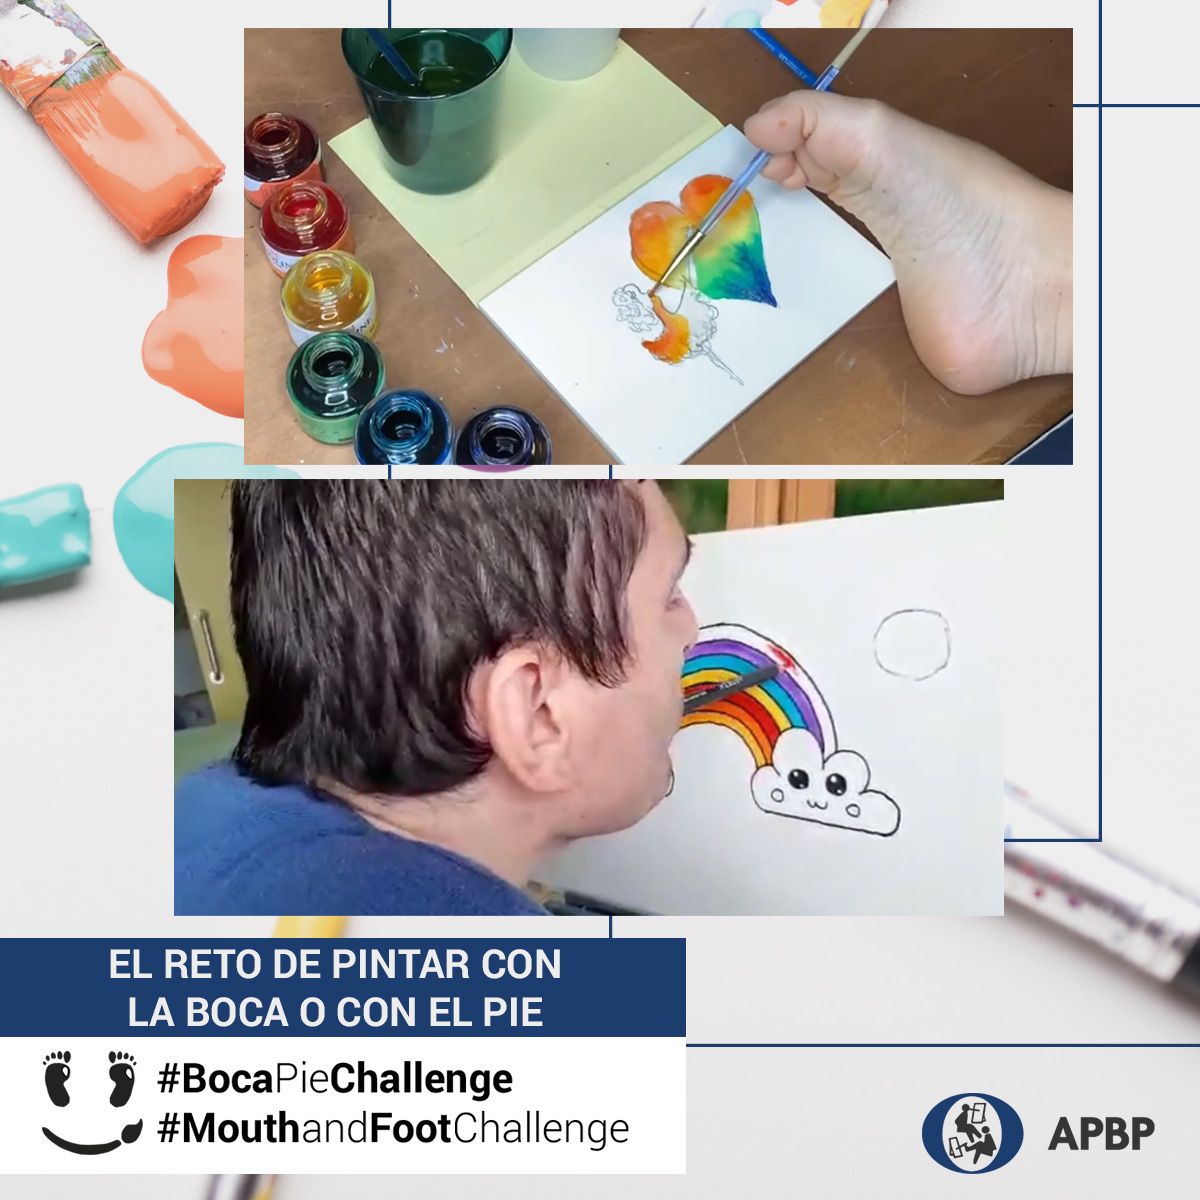 #BocaPieChallenge: El reto de pintar con la boca o con el pie